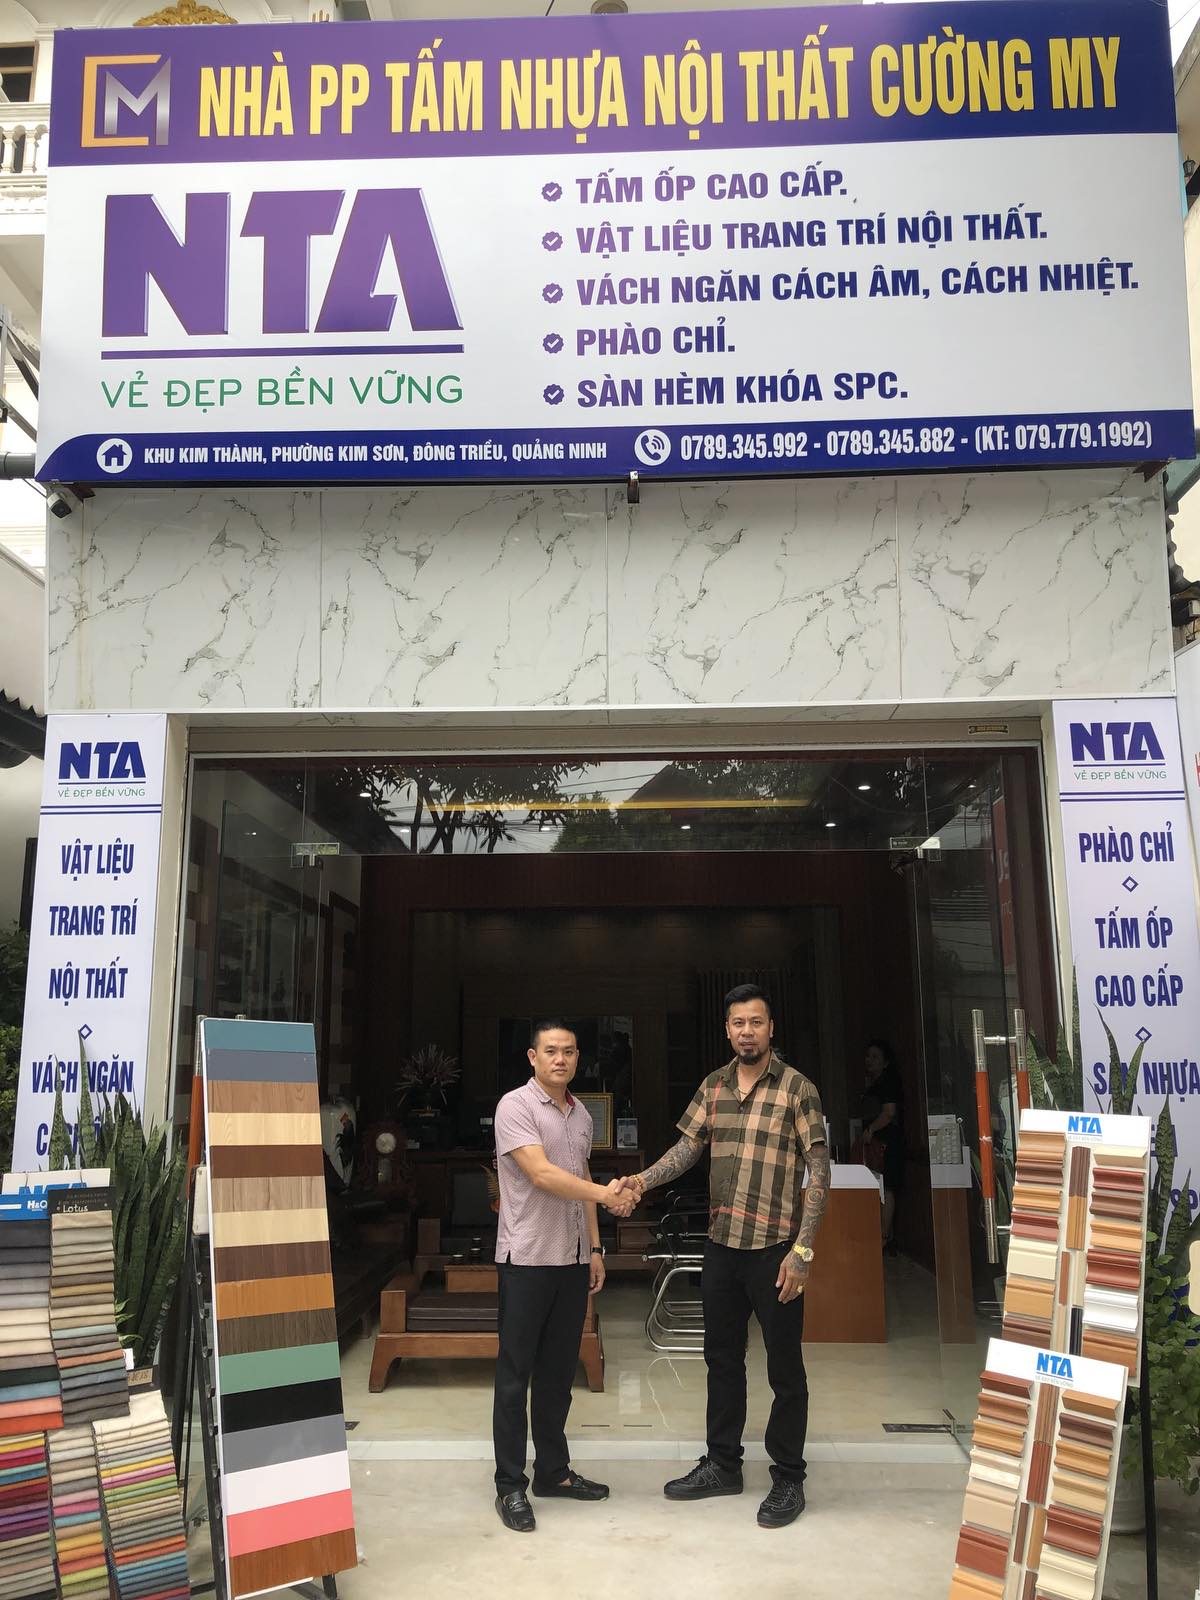 Ra mắt Nhà phân phối Nhựa Trường An tại Quảng Ninh – NPP Cường My